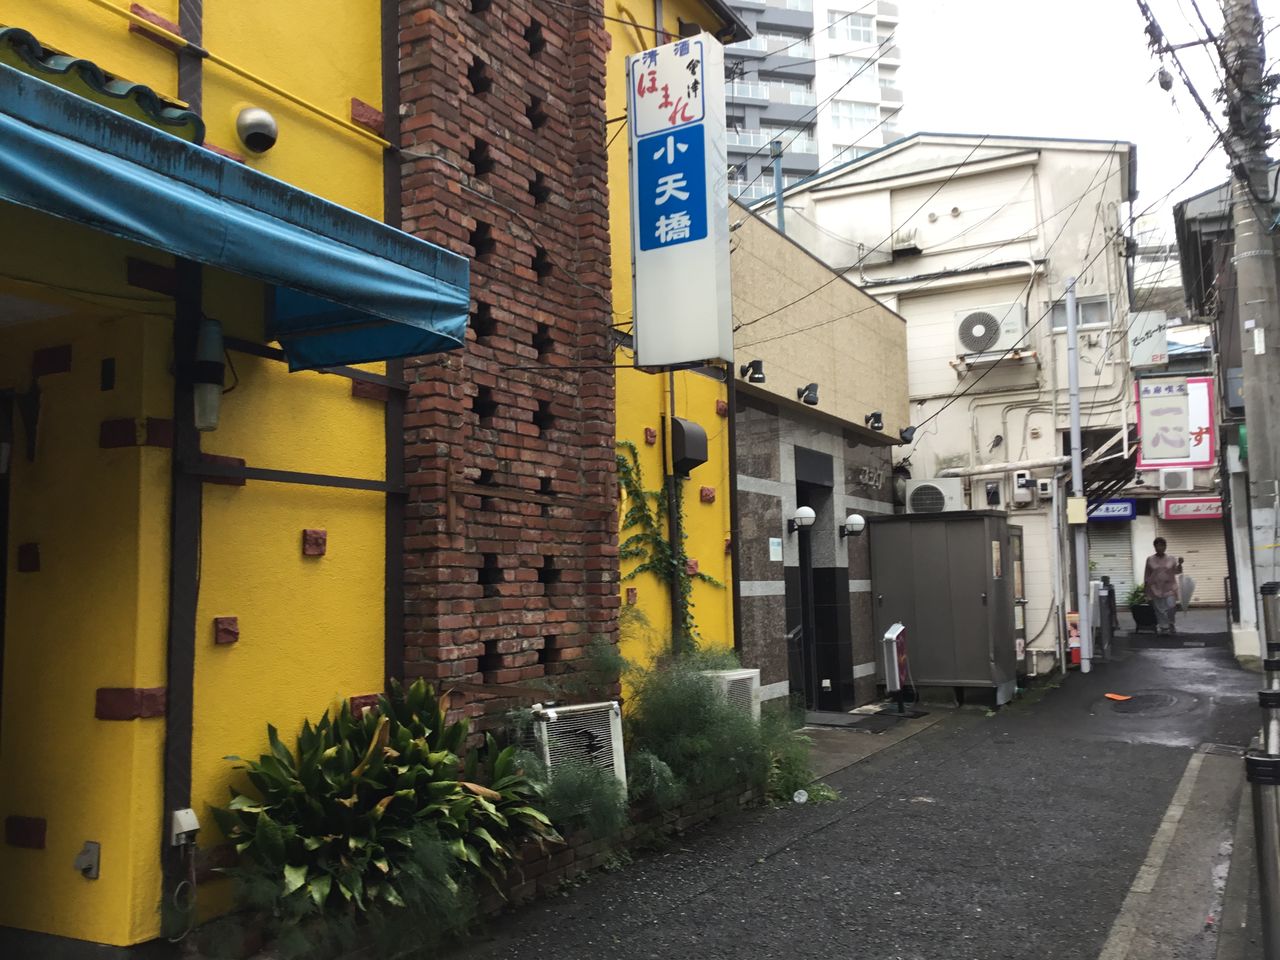 神奈川県横須賀市横須賀中央 1 若松飲食店街の路地裏迷宮 散歩と旅ときどき温泉